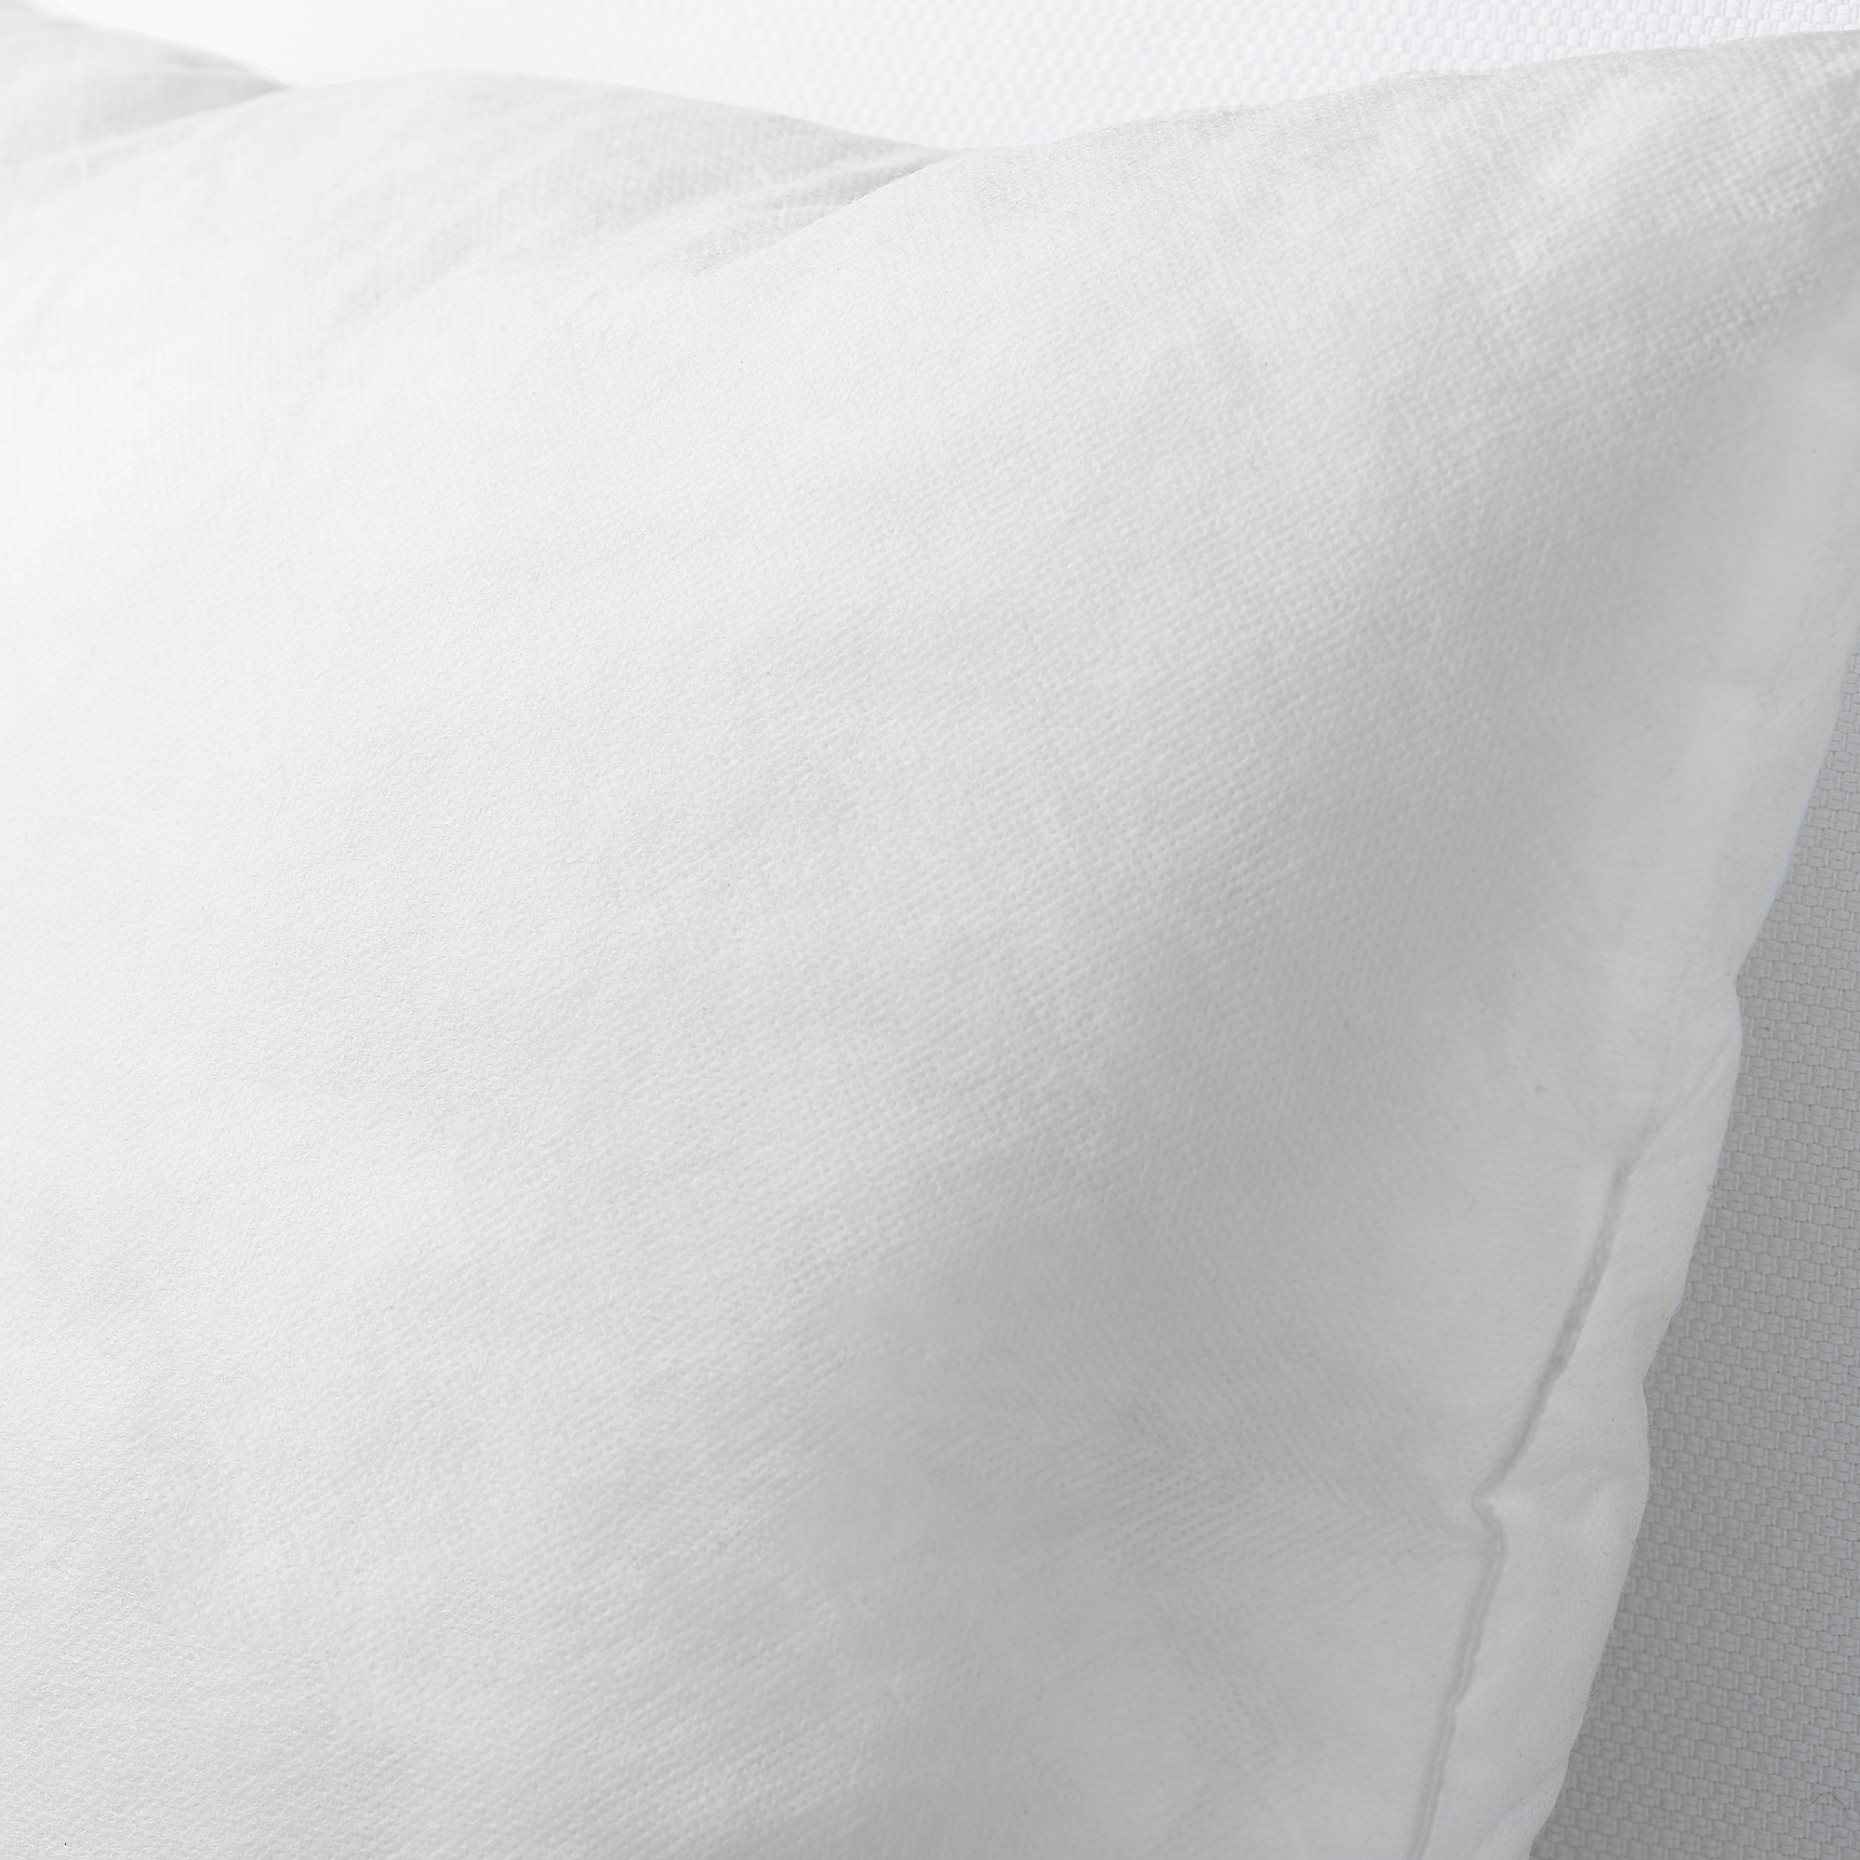 INNER, cushion pad/soft, 65x65 cm, 502.671.29